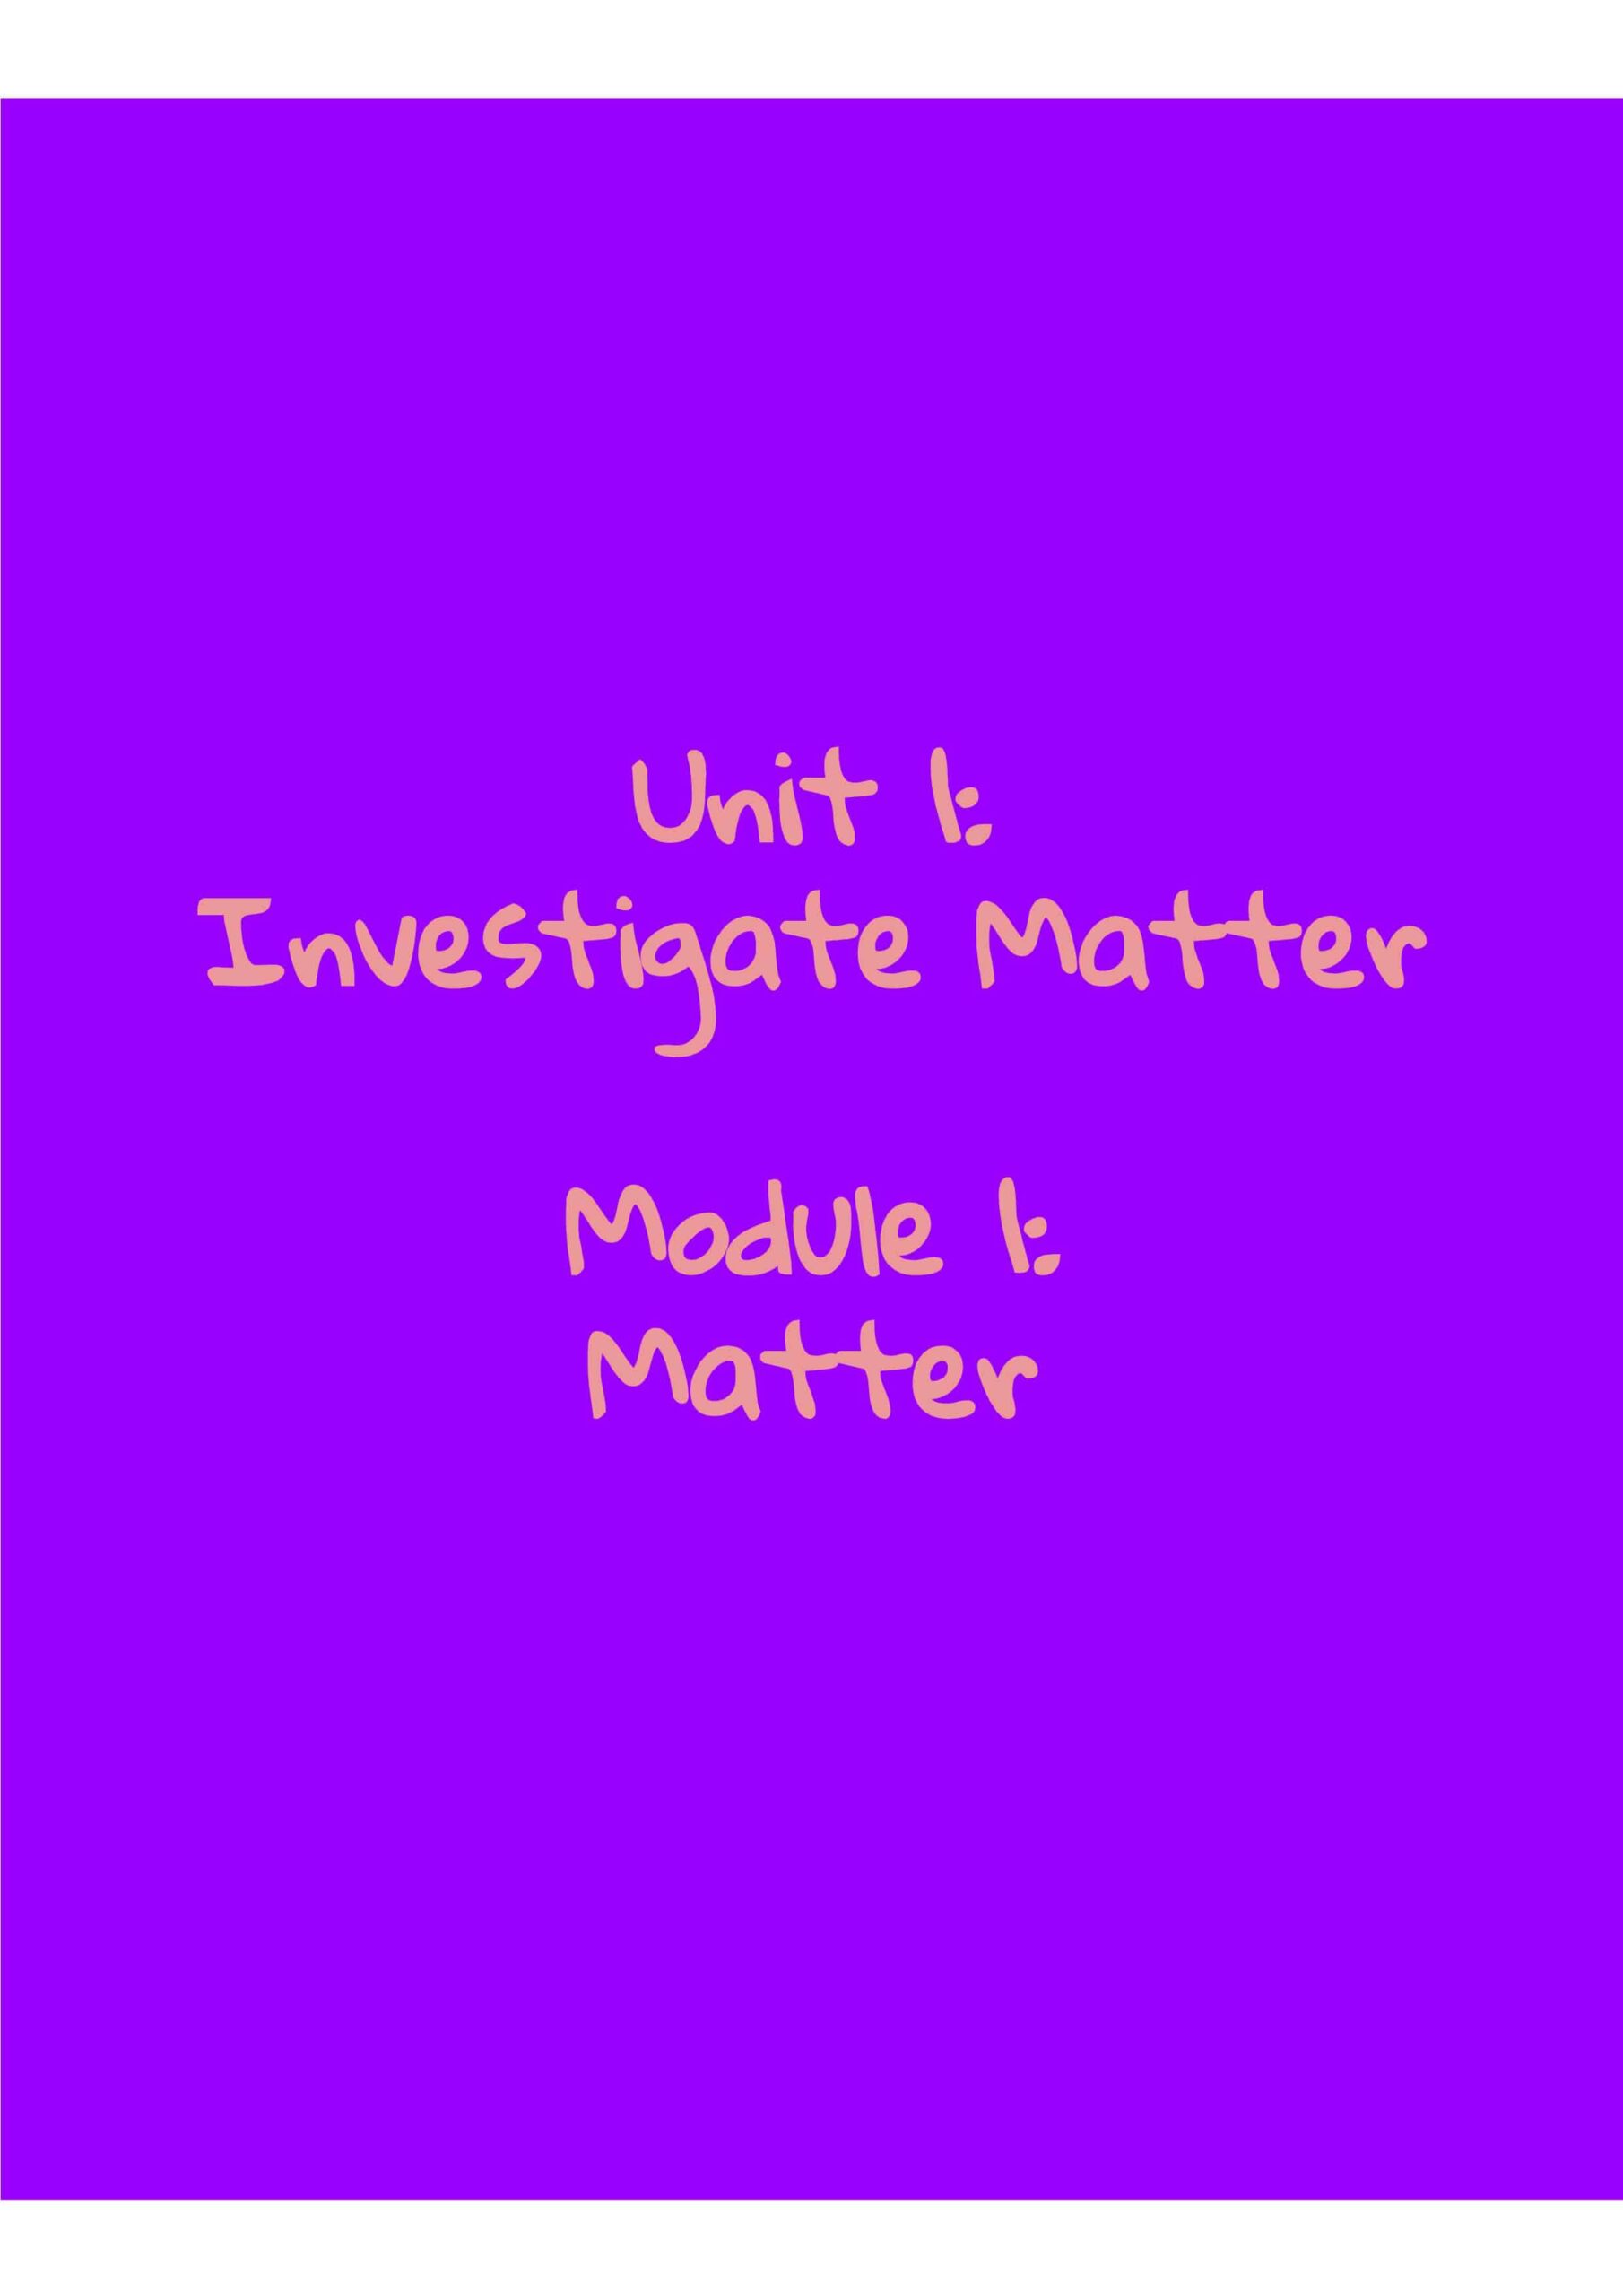 ملخص الوحدة الأولى Investigate matter بالإنجليزي العلوم المتكاملة الصف الخامس نخبة 